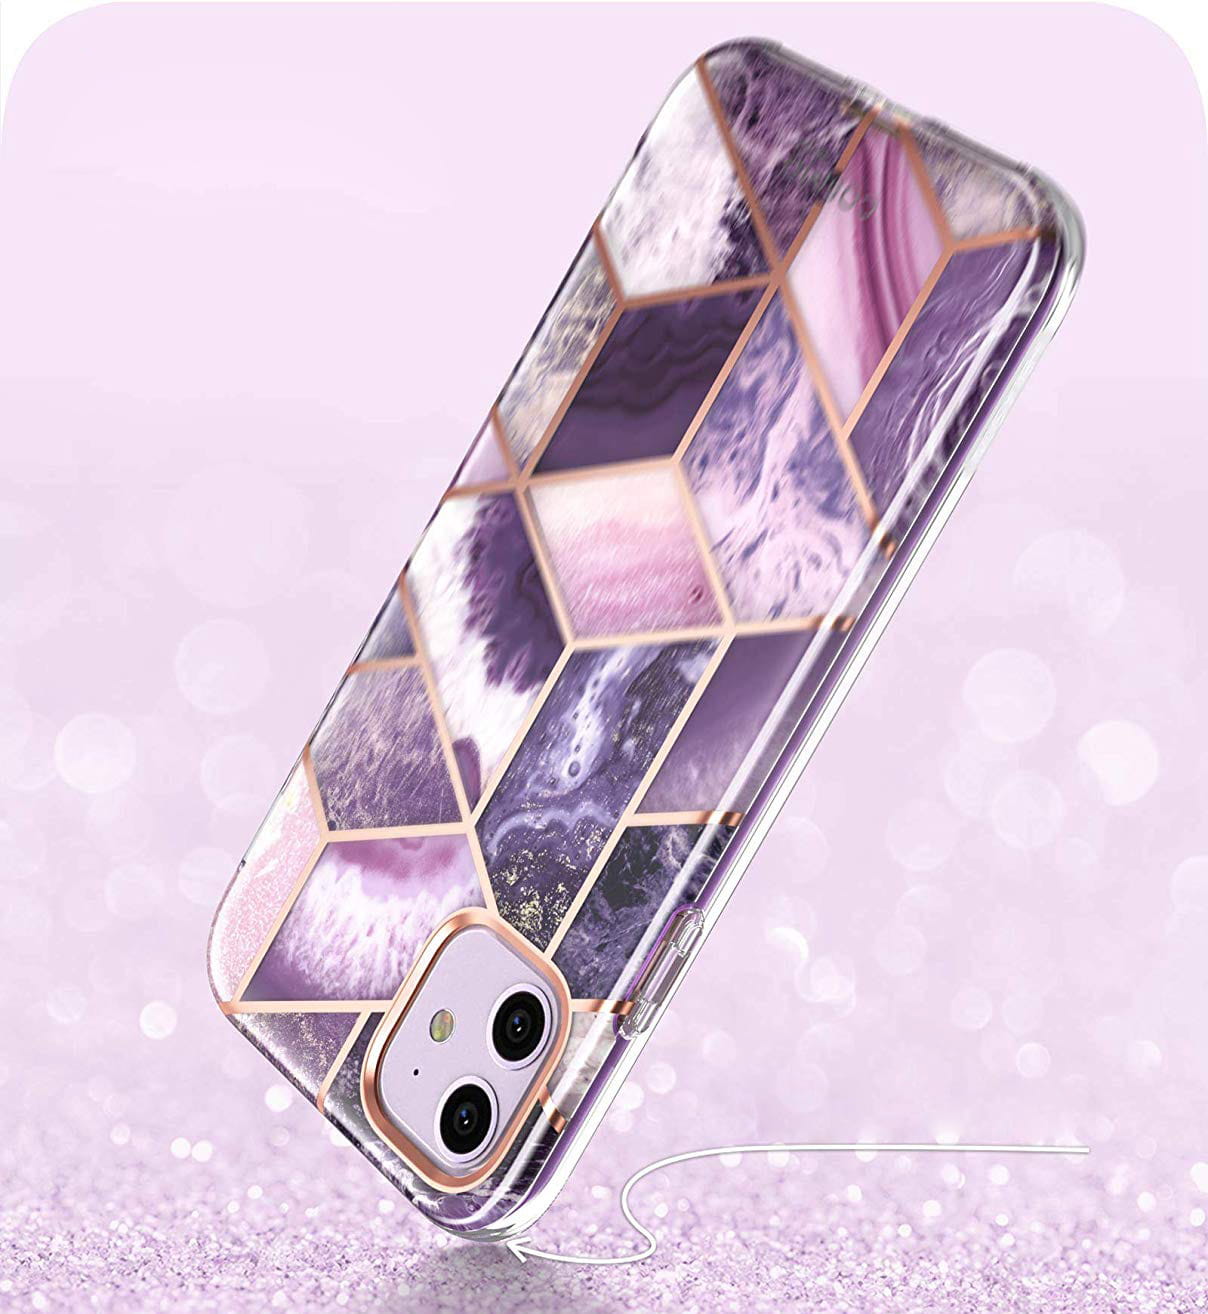 Schutzhülle Supcase i-Blason Cosmo SP für iPhone 11 violett